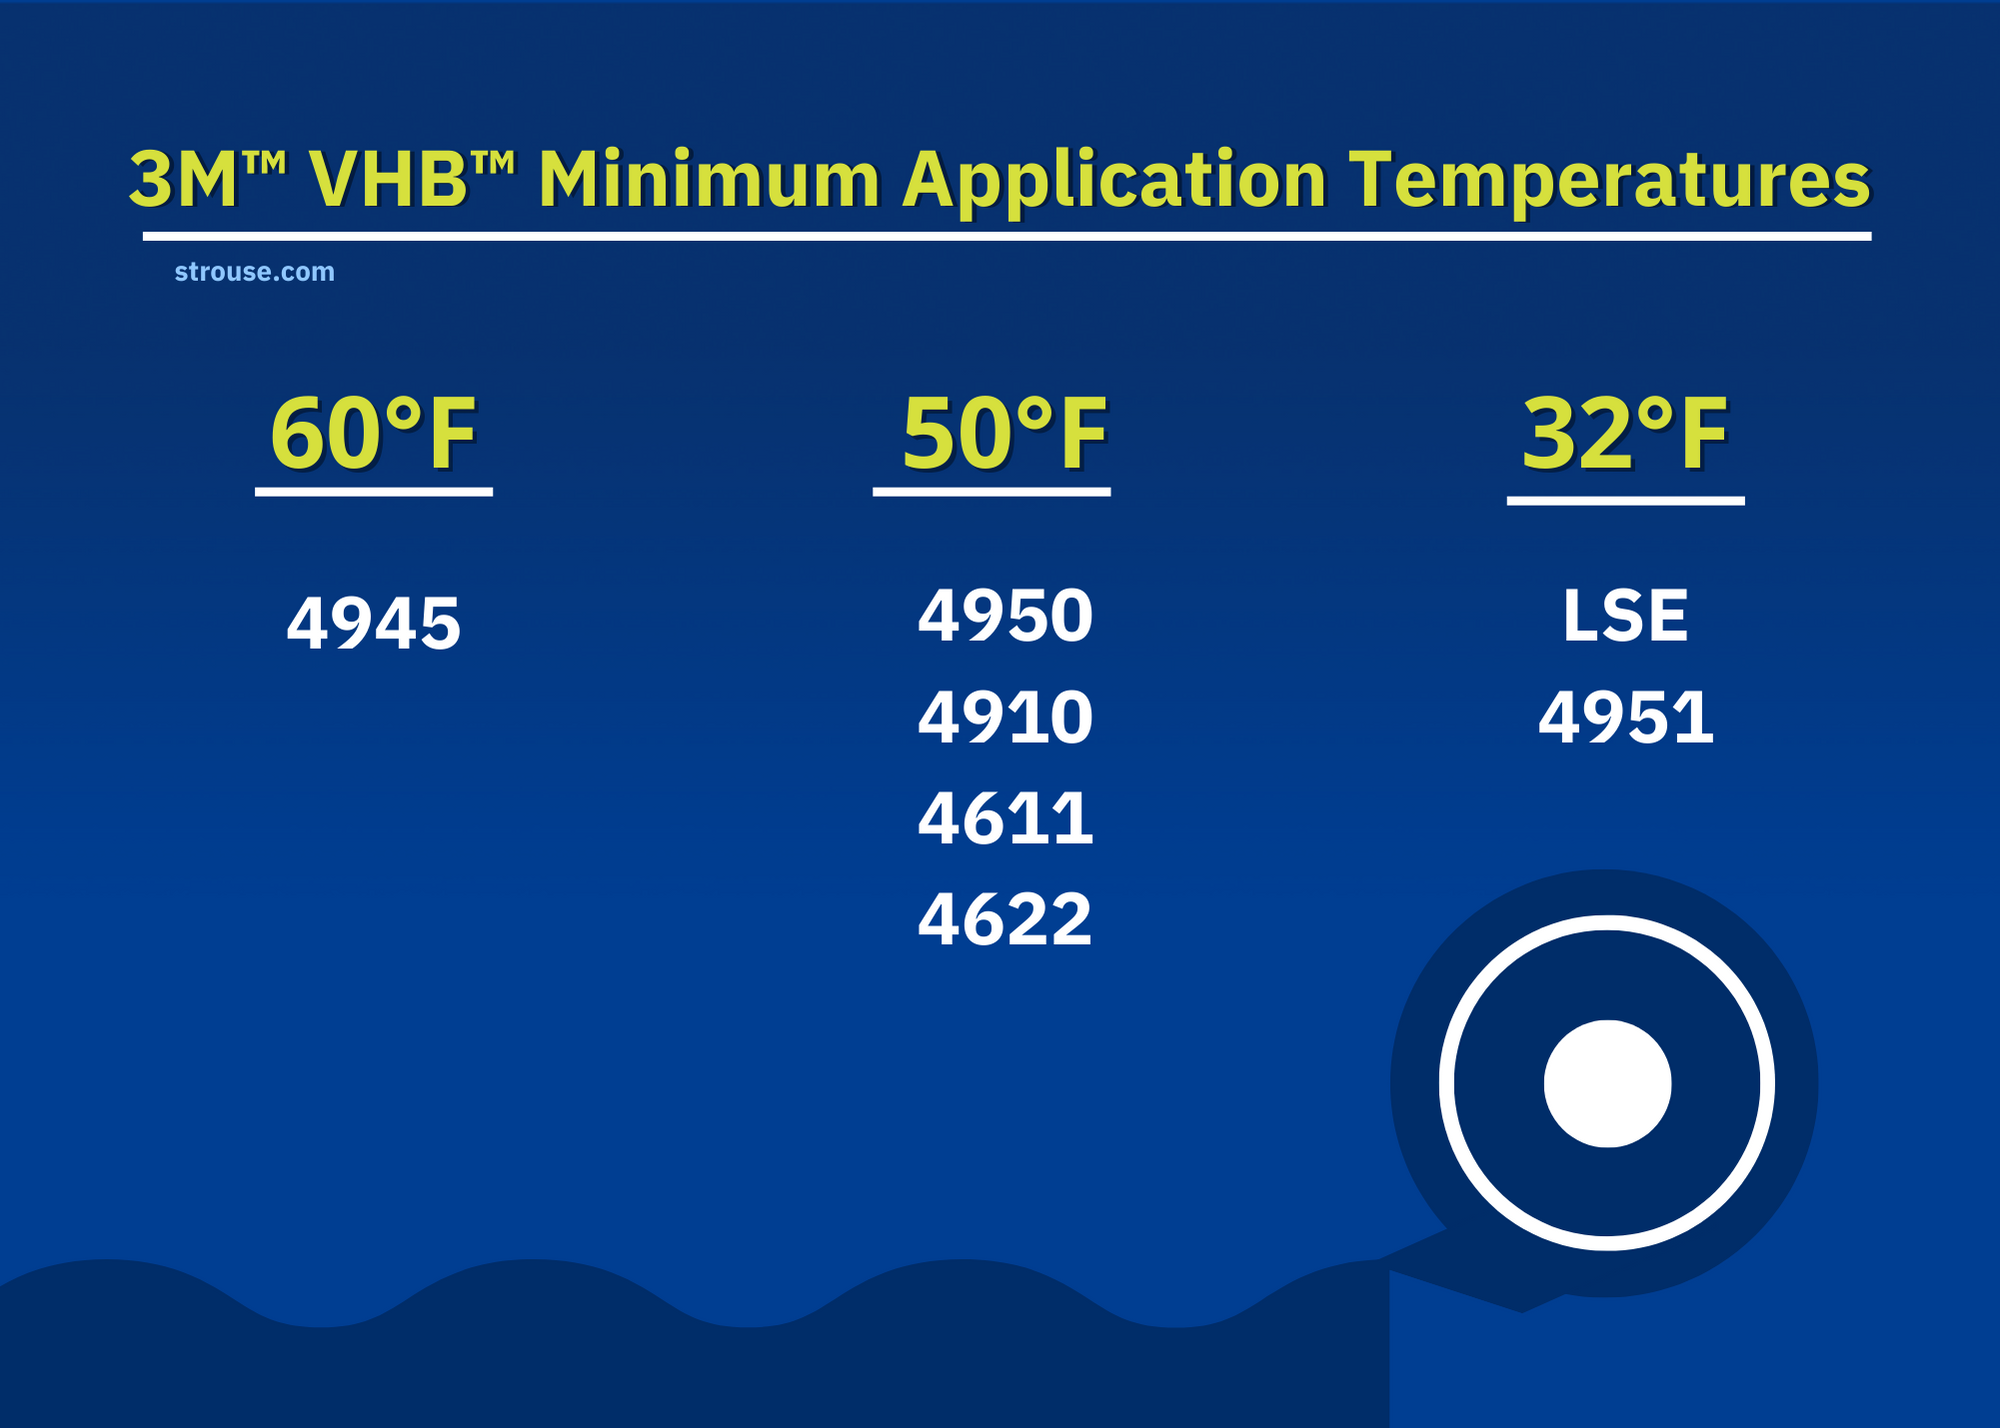 The 3M VHB Minimum Application Temperatures